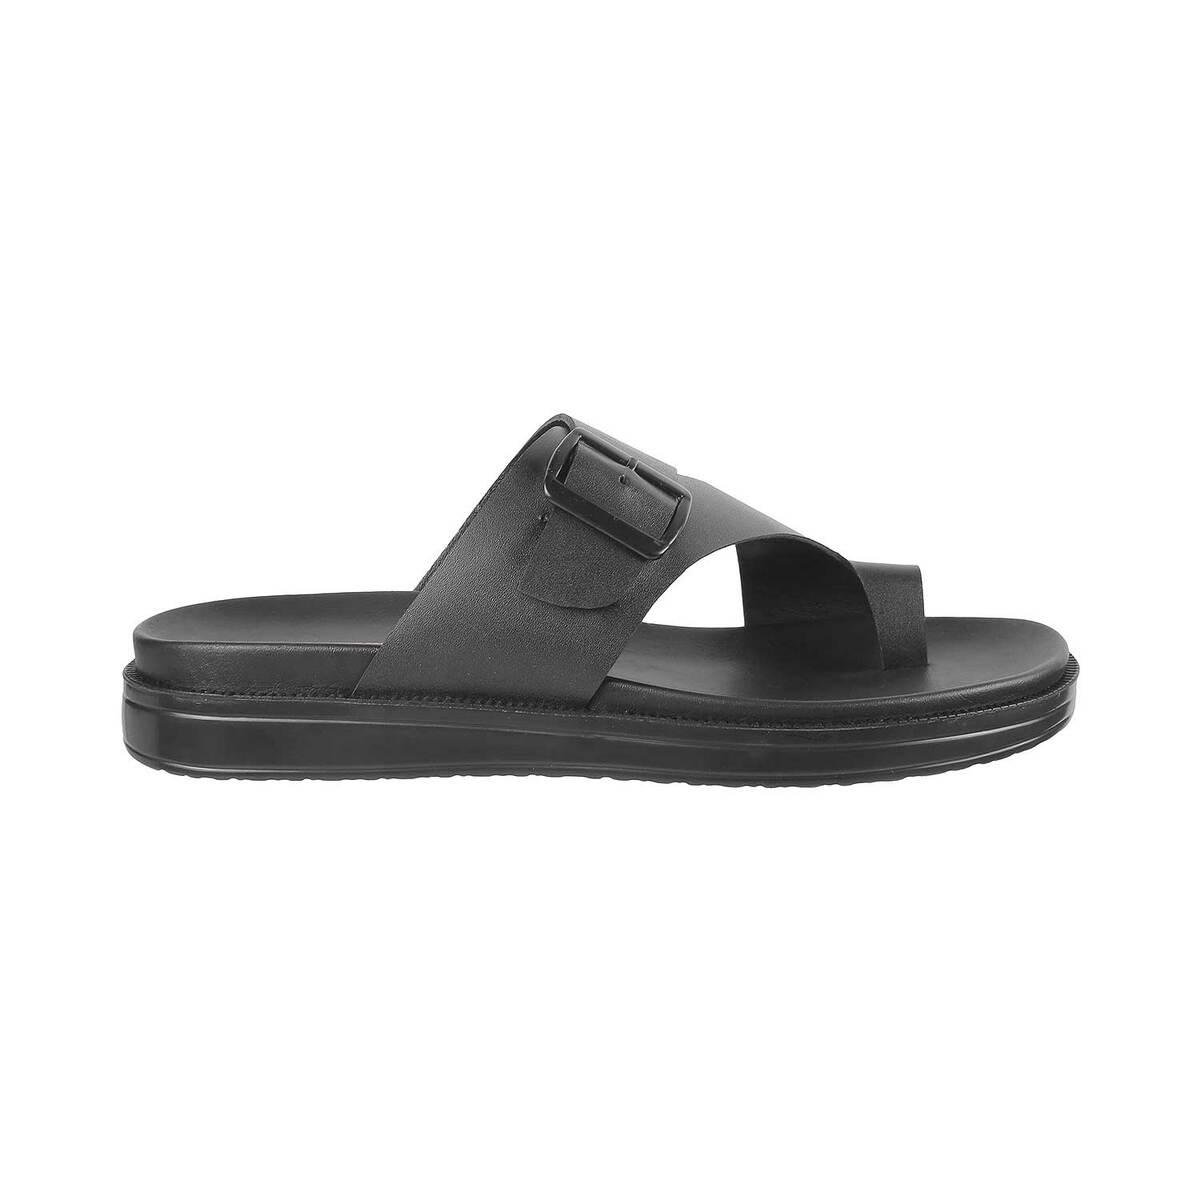 Buy Men Black Casual Slippers Online | SKU: 16-707-11-40-Metro Shoes